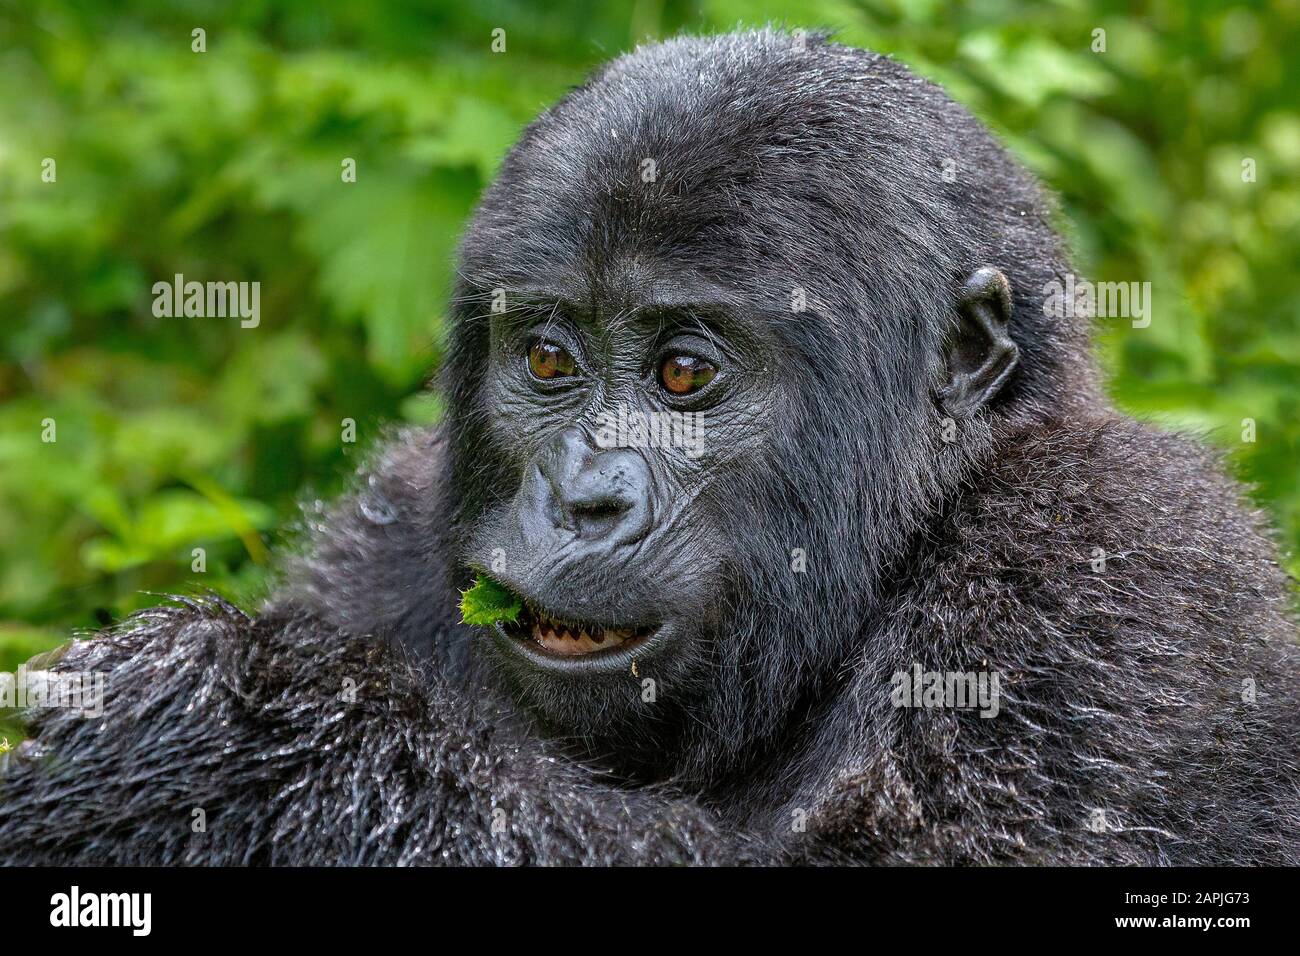 Young mountain gorilla, Bwindi, Uganda Stock Photo